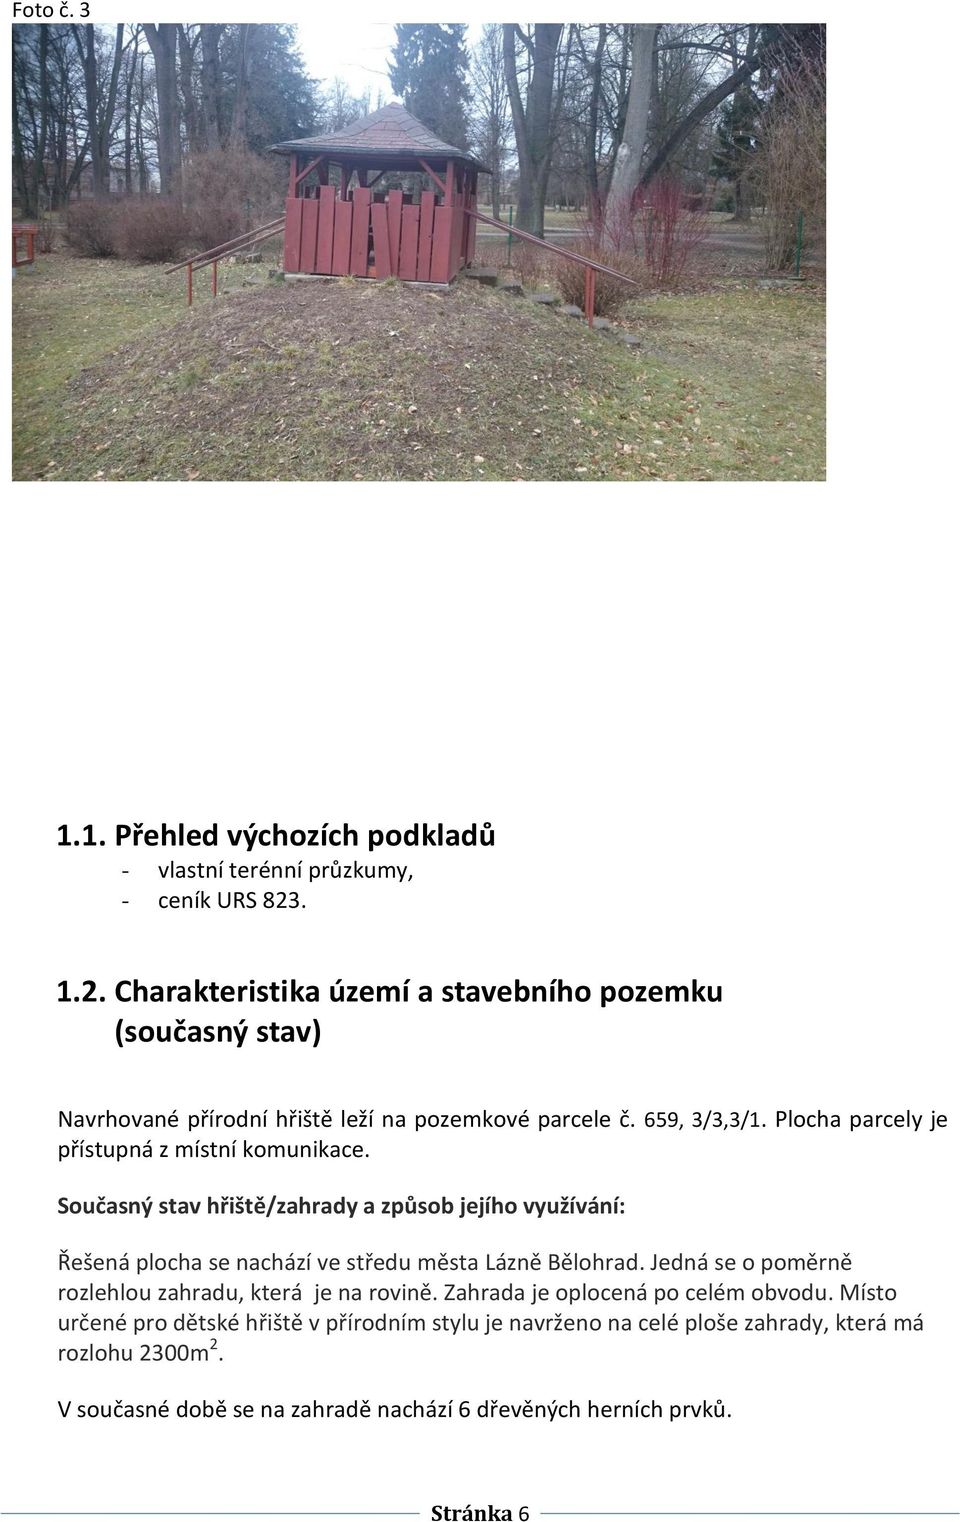 Plocha parcely je přístupná z místní komunikace. Současný stav hřiště/zahrady a způsob jejího využívání: Řešená plocha se nachází ve středu města Lázně Bělohrad.